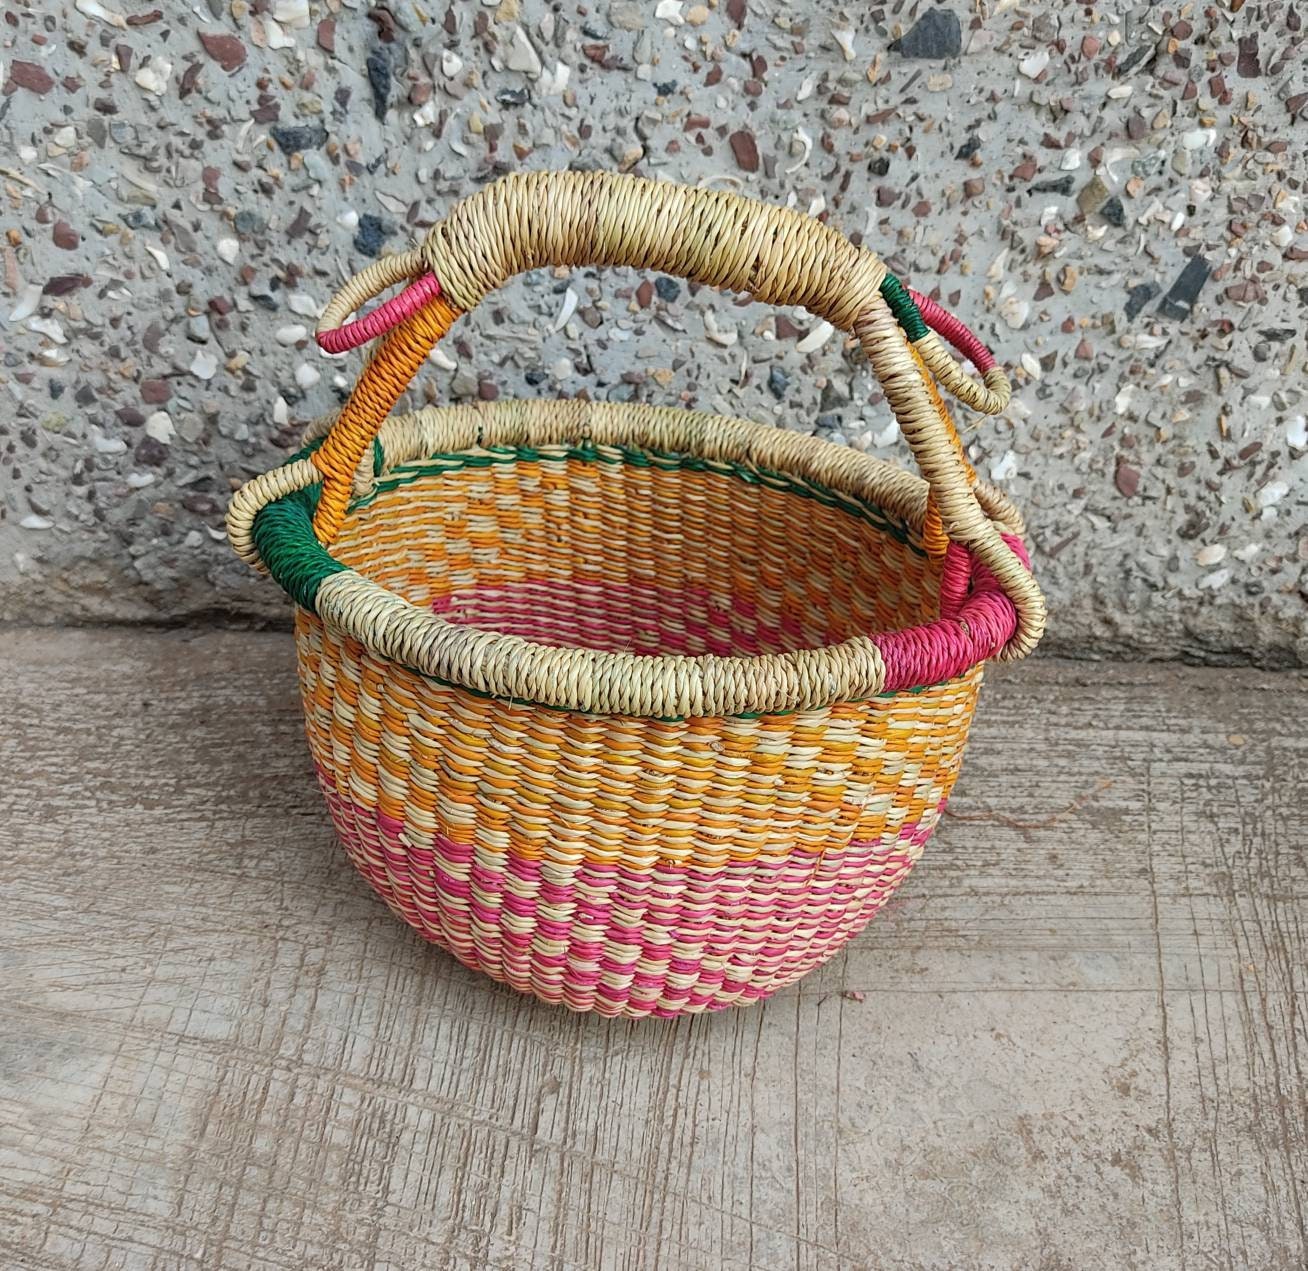 Small storage Basket | Bolga Basket | Baby gift basket | Bolga market basket | Straw bag | Market basket | African Basket - AfricanheritageGH